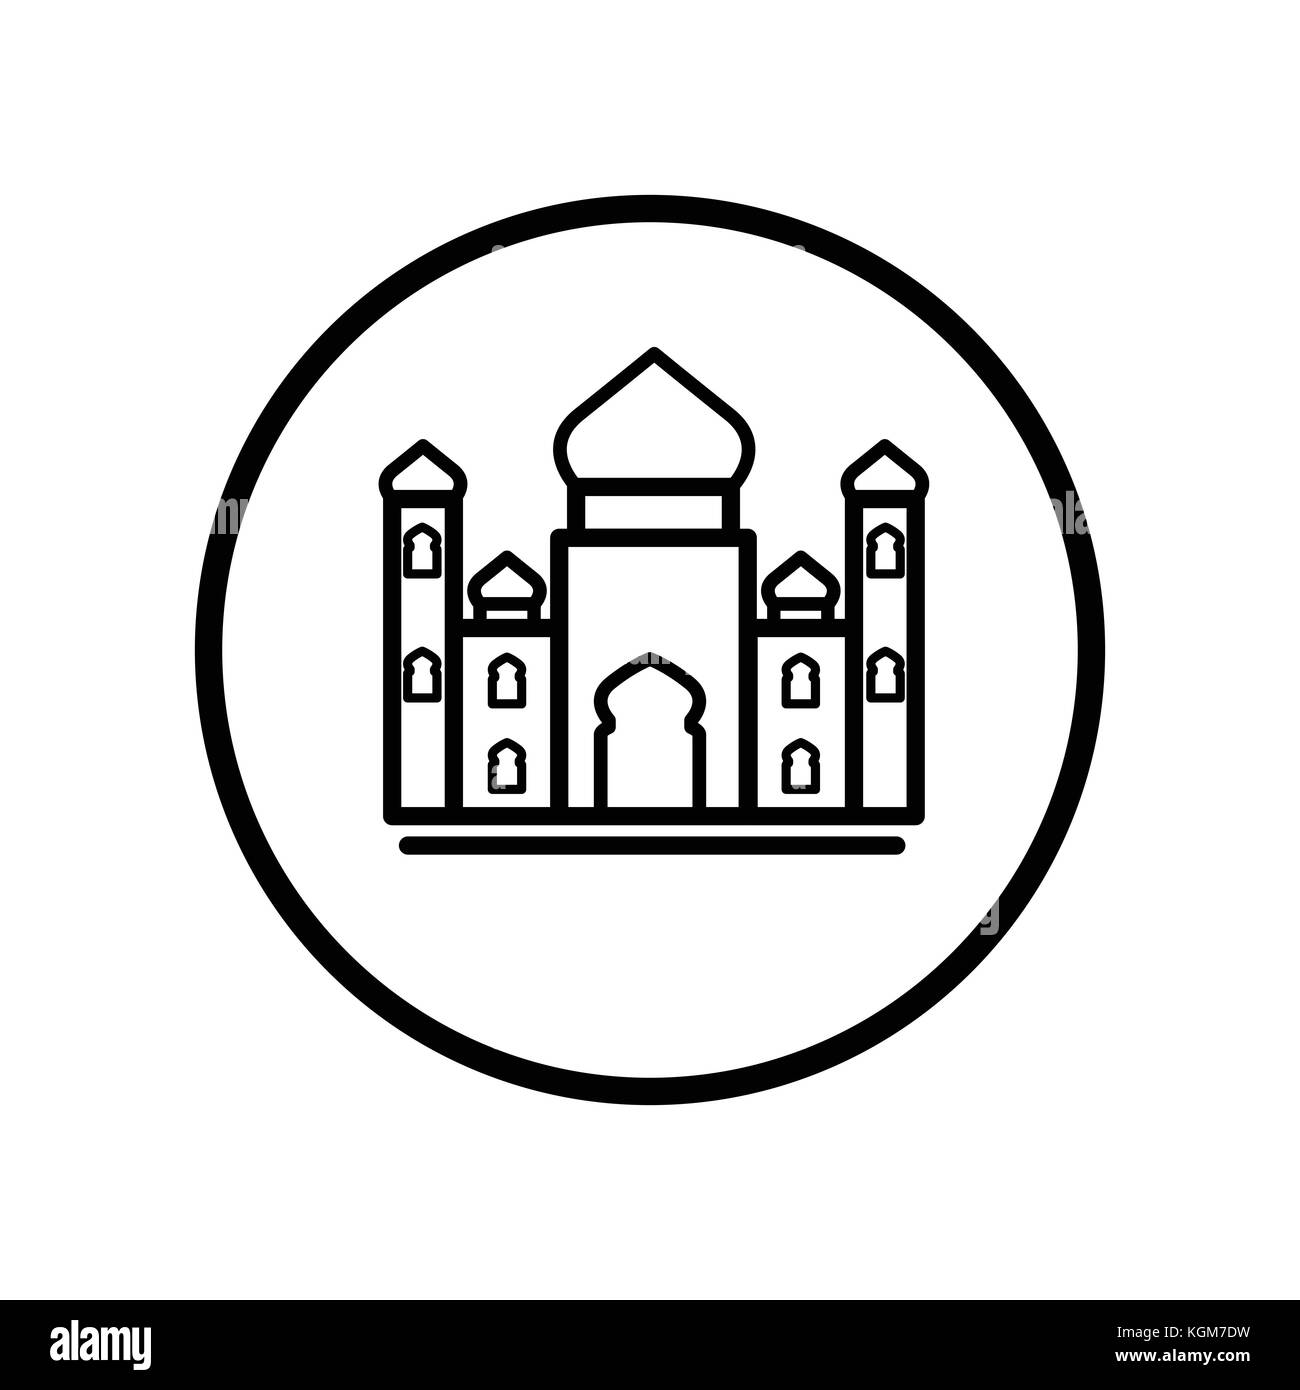 Islamische Symbol, Moschee Symbol in der Circle Line, iconic Symbol in einem Kreis, auf weißem Hintergrund, für die islamischen Vorzeichen Konzept. Vektor ein futuristisches Design. Stock Vektor